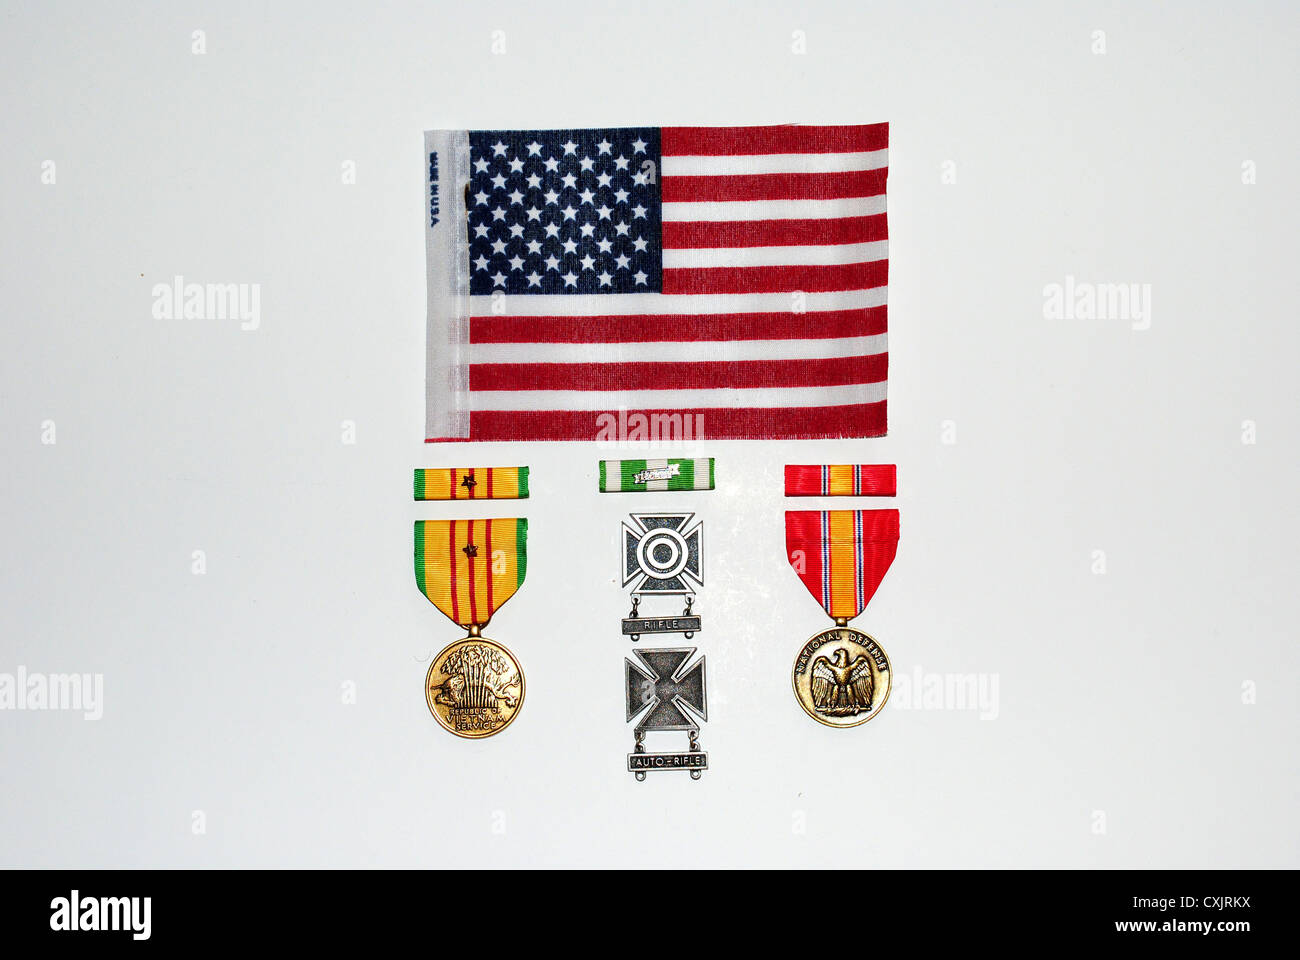 Mon service militaire,Armée,Prix,photographié avec le drapeau américain, publié à dire,'Merci pour servir notre pays''. 1968-1969 Banque D'Images